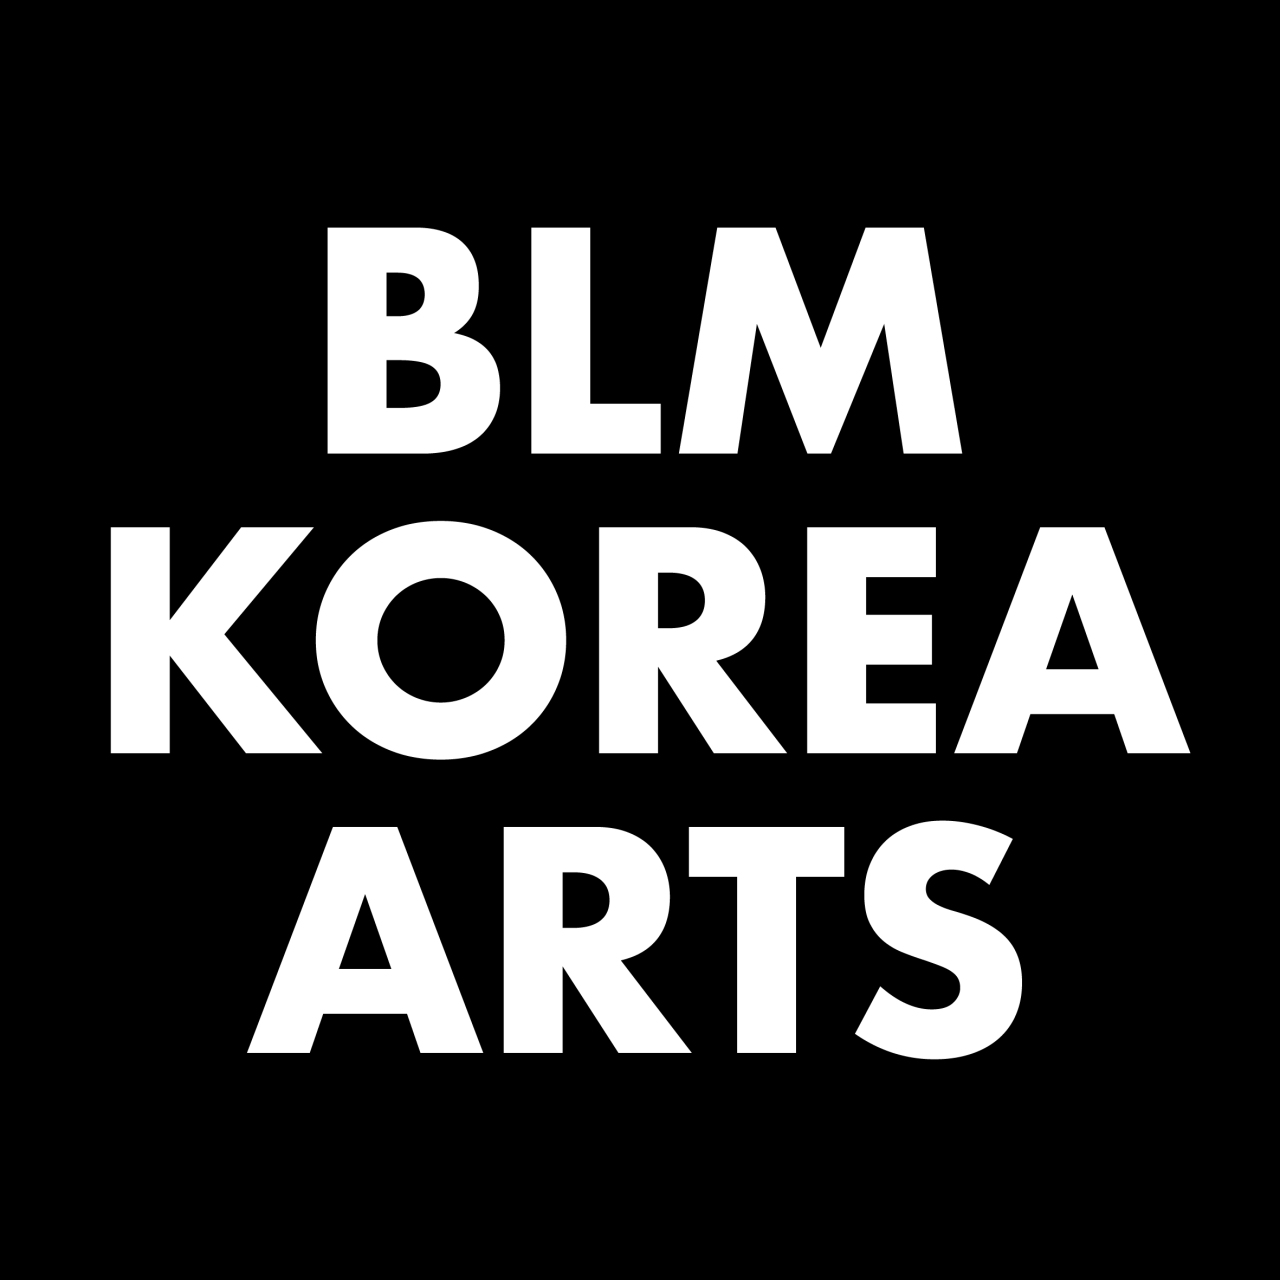 BLMKoreaArts logo (Courtesy of Shin Dok-ho)